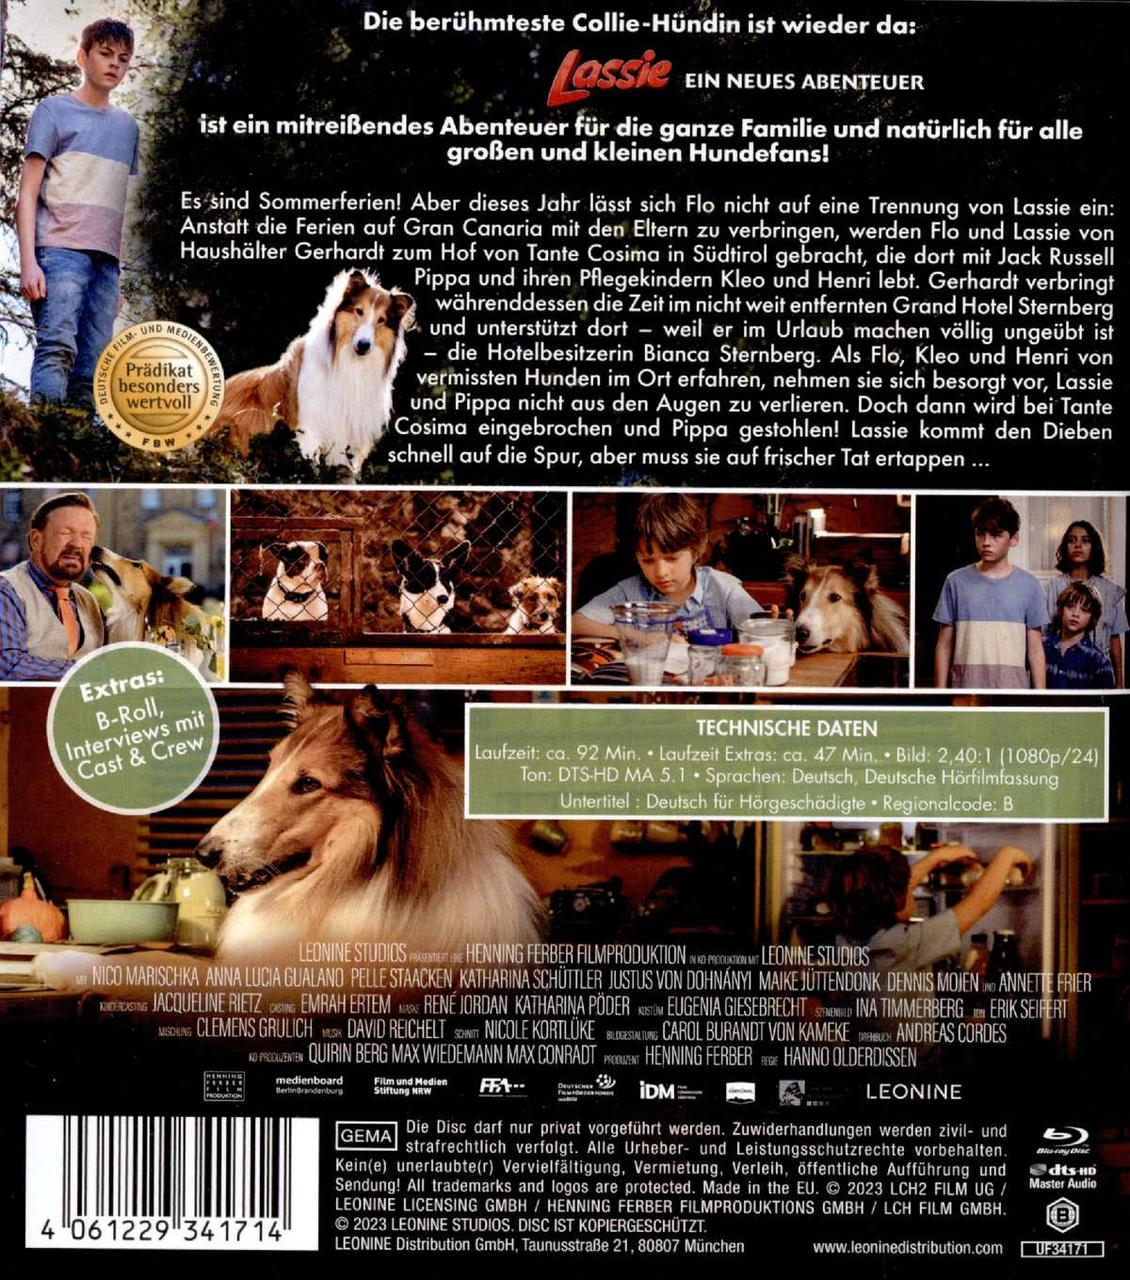 - Blu-ray Ein Lassie neues Abenteuer